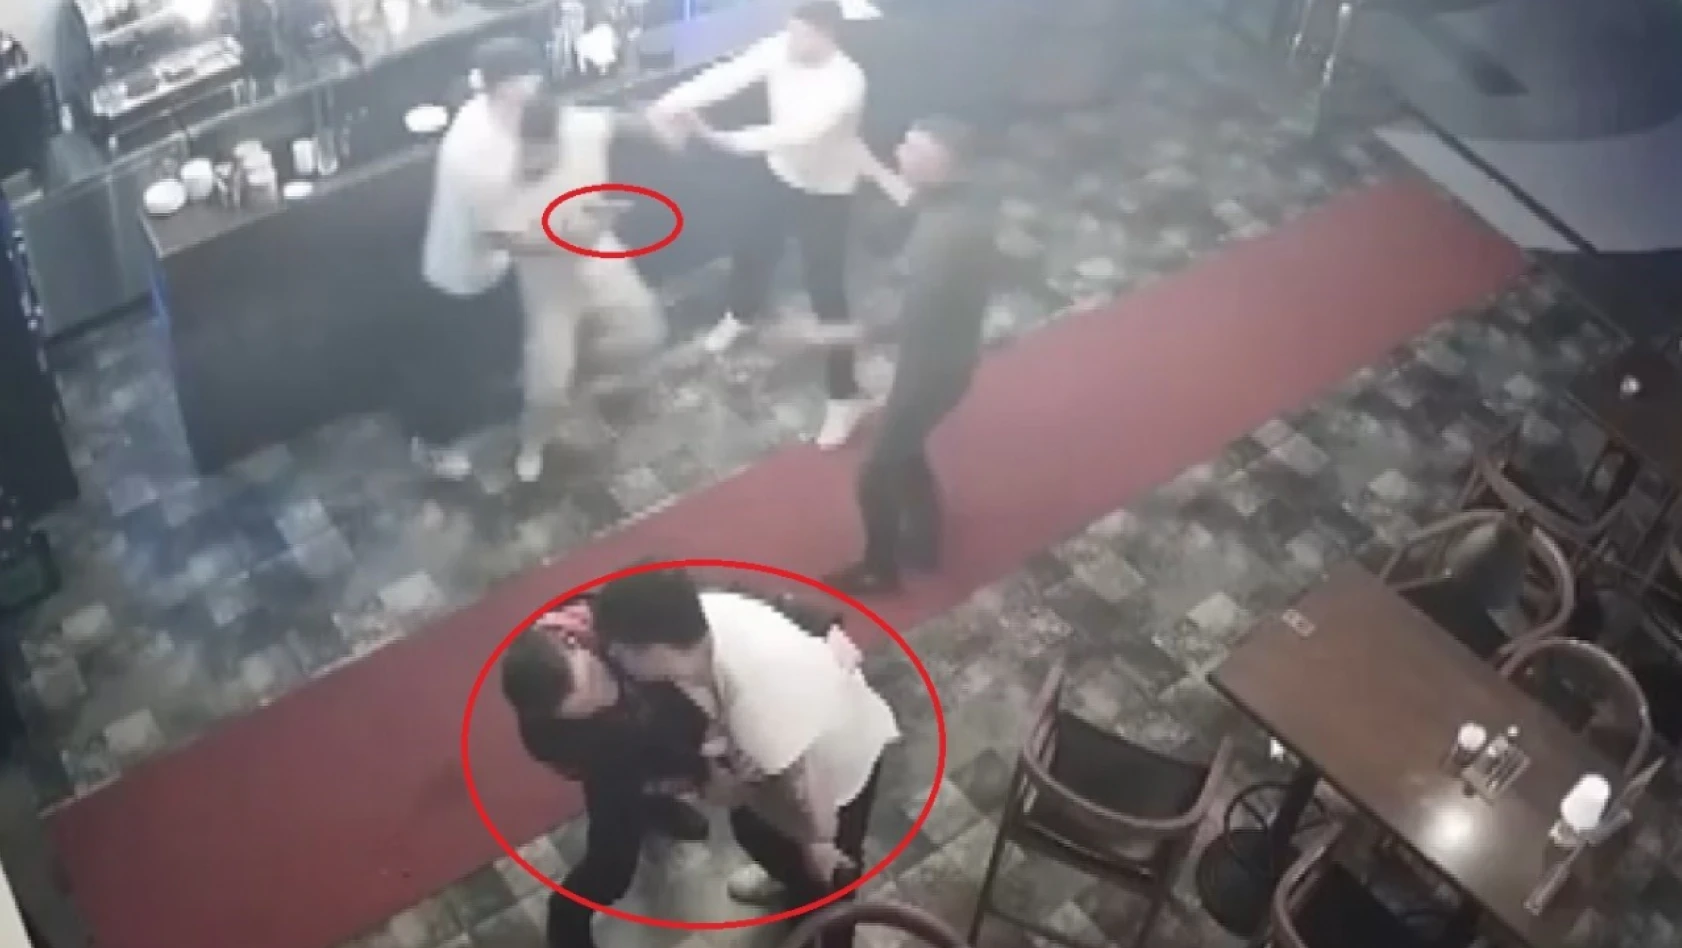 Eli silahlı 2 kişi, ünlü şarkıcının sahne aldığı mekana saldırısı kamerada